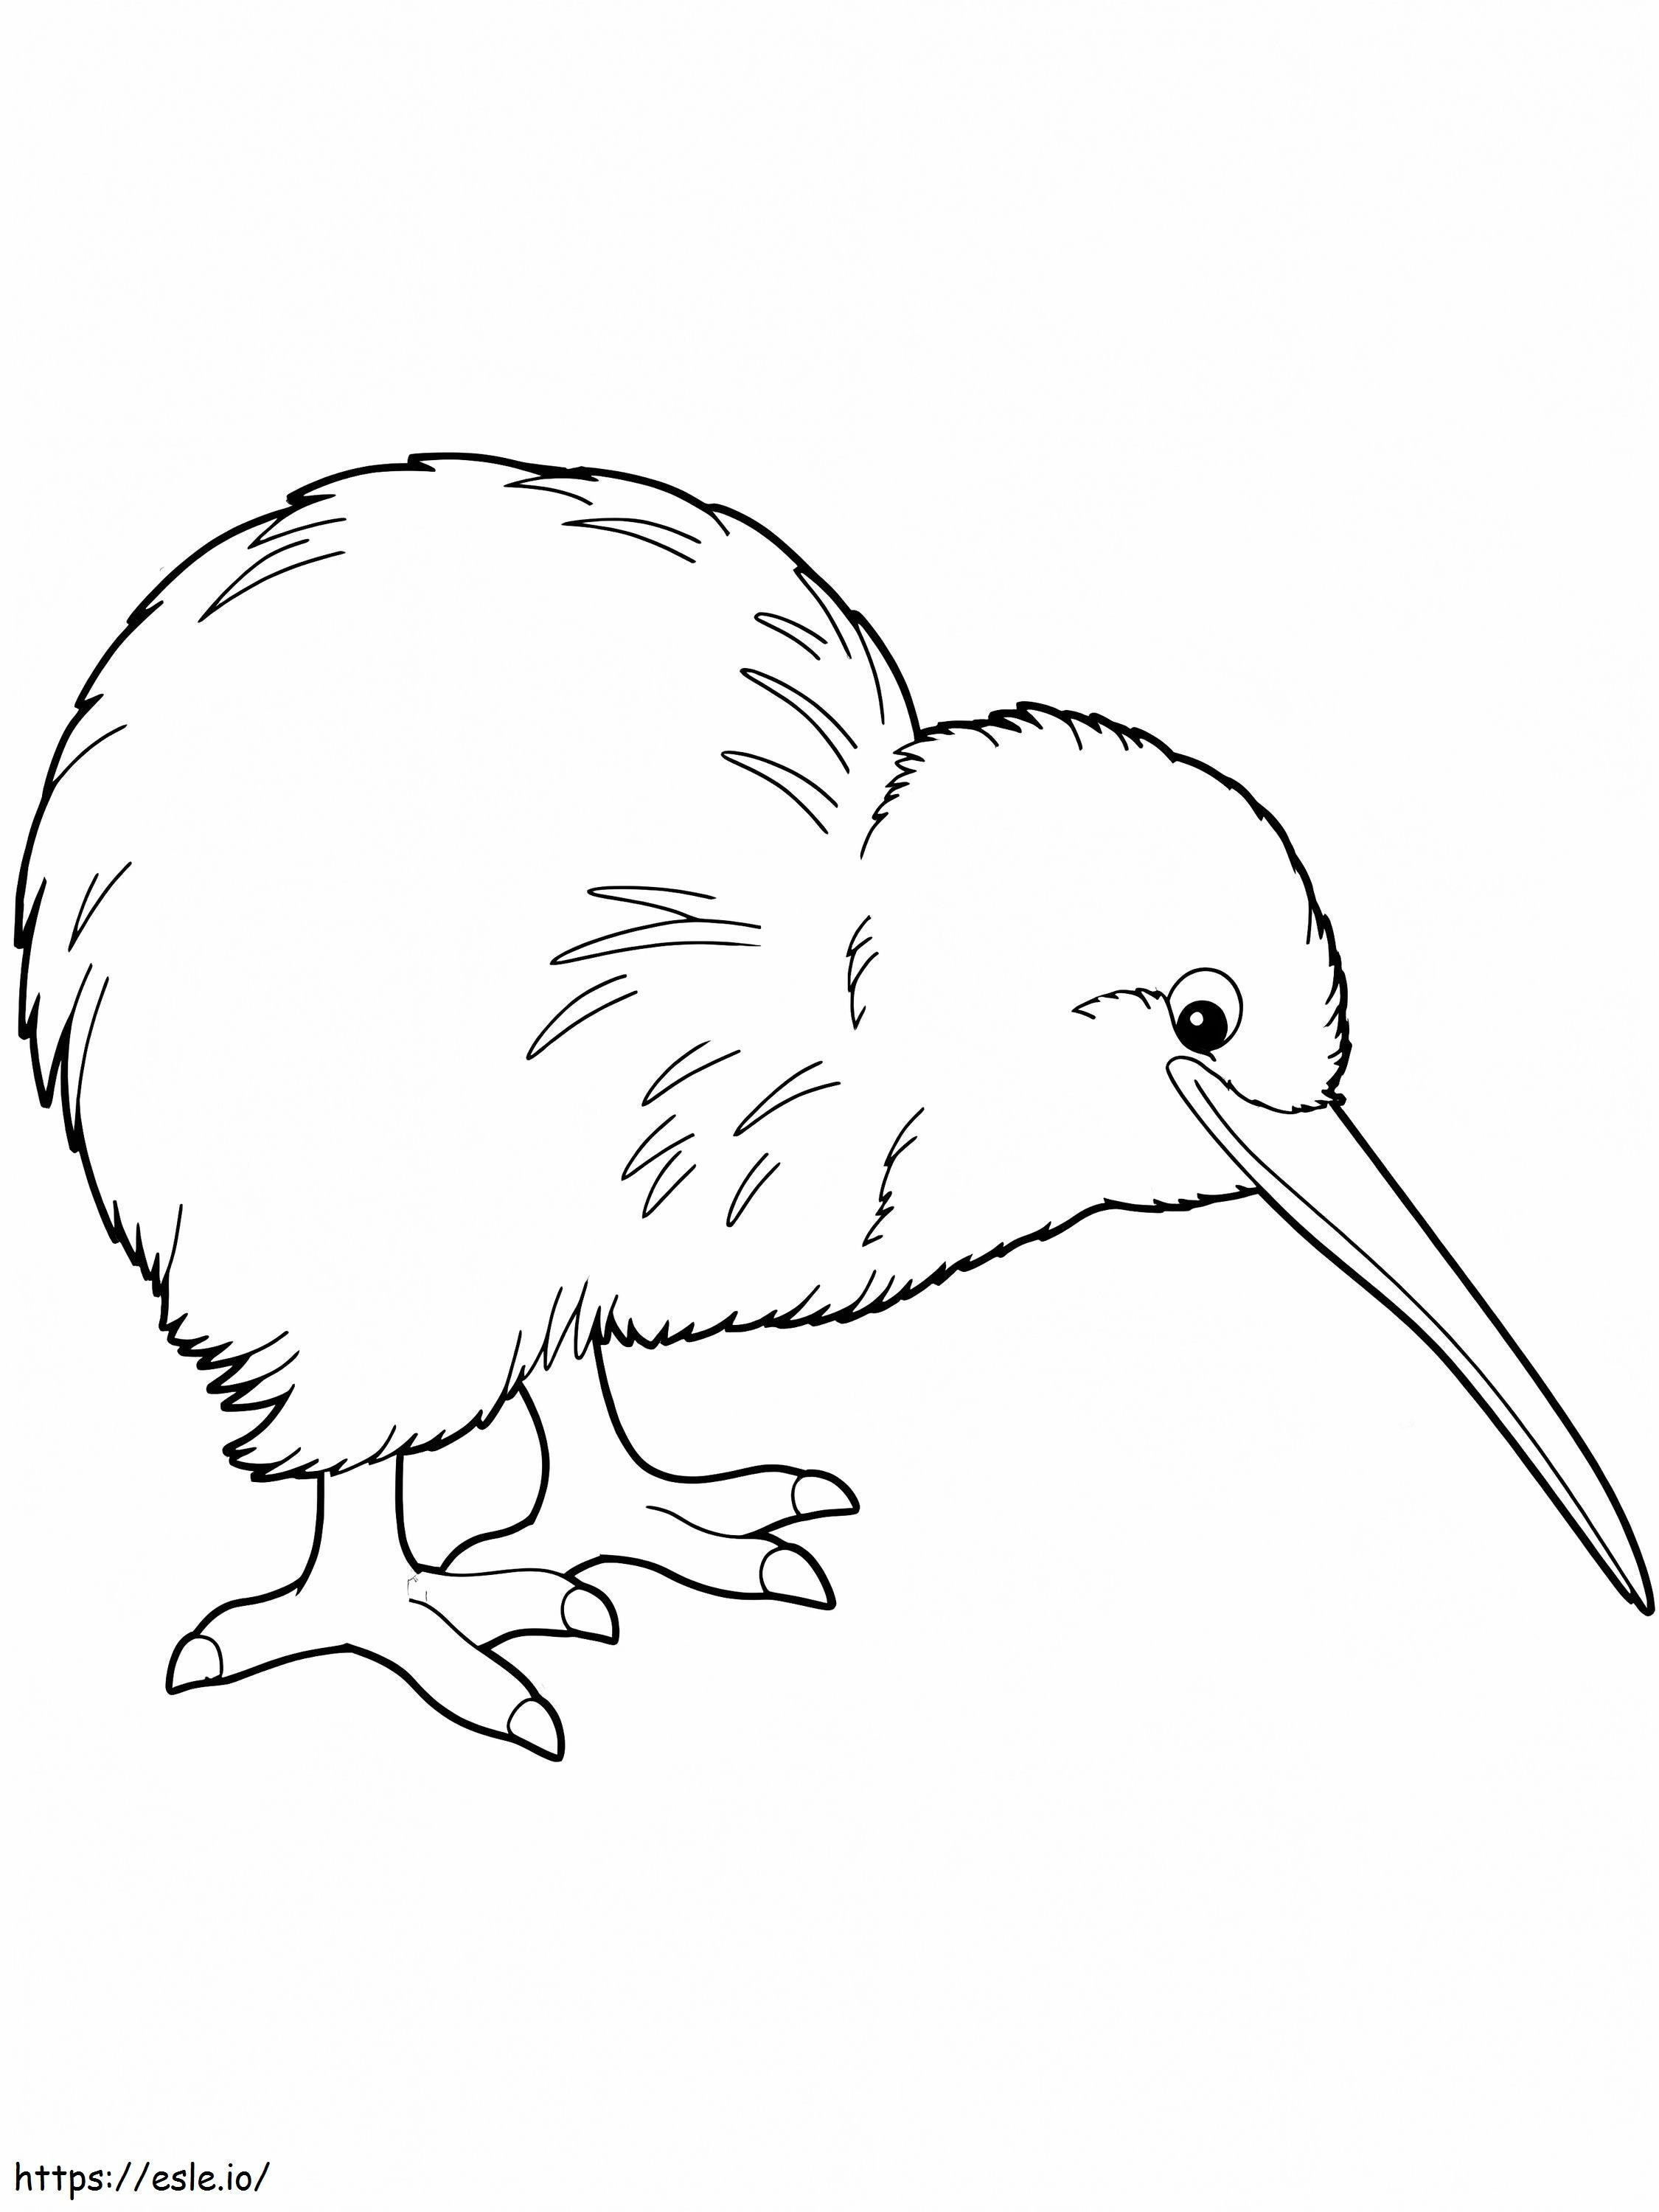 Uccello kiwi semplice da colorare